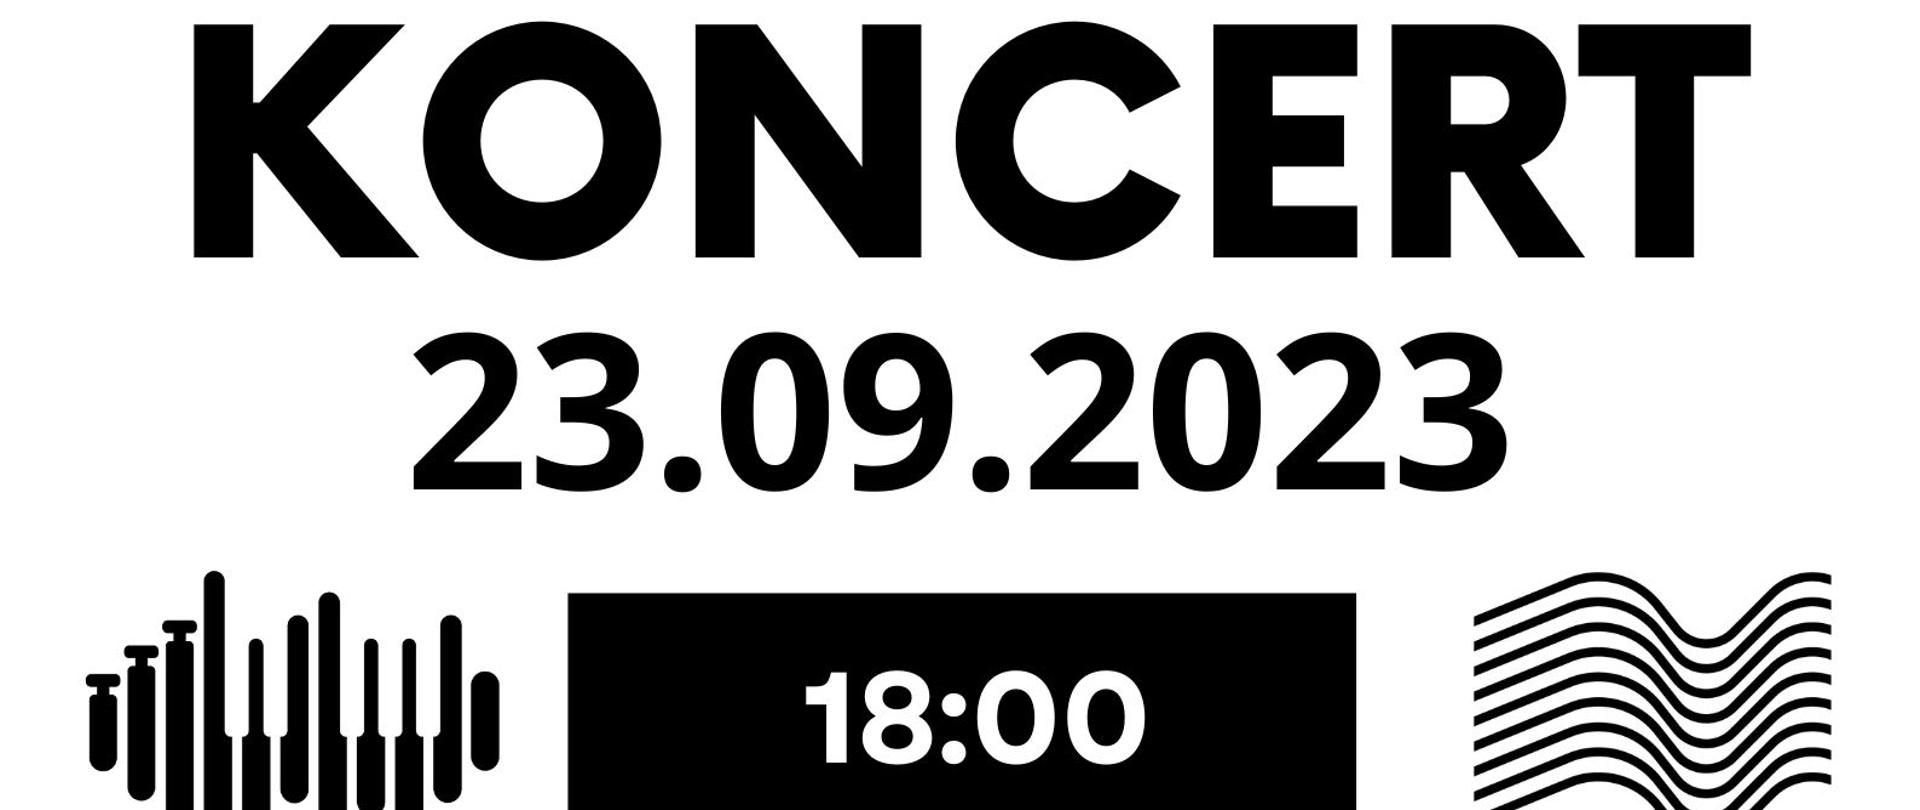 Plakat informacyjny dotyczący koncertu odbywającego się w dniu 23.09.2023 r. o godz. 18.00.